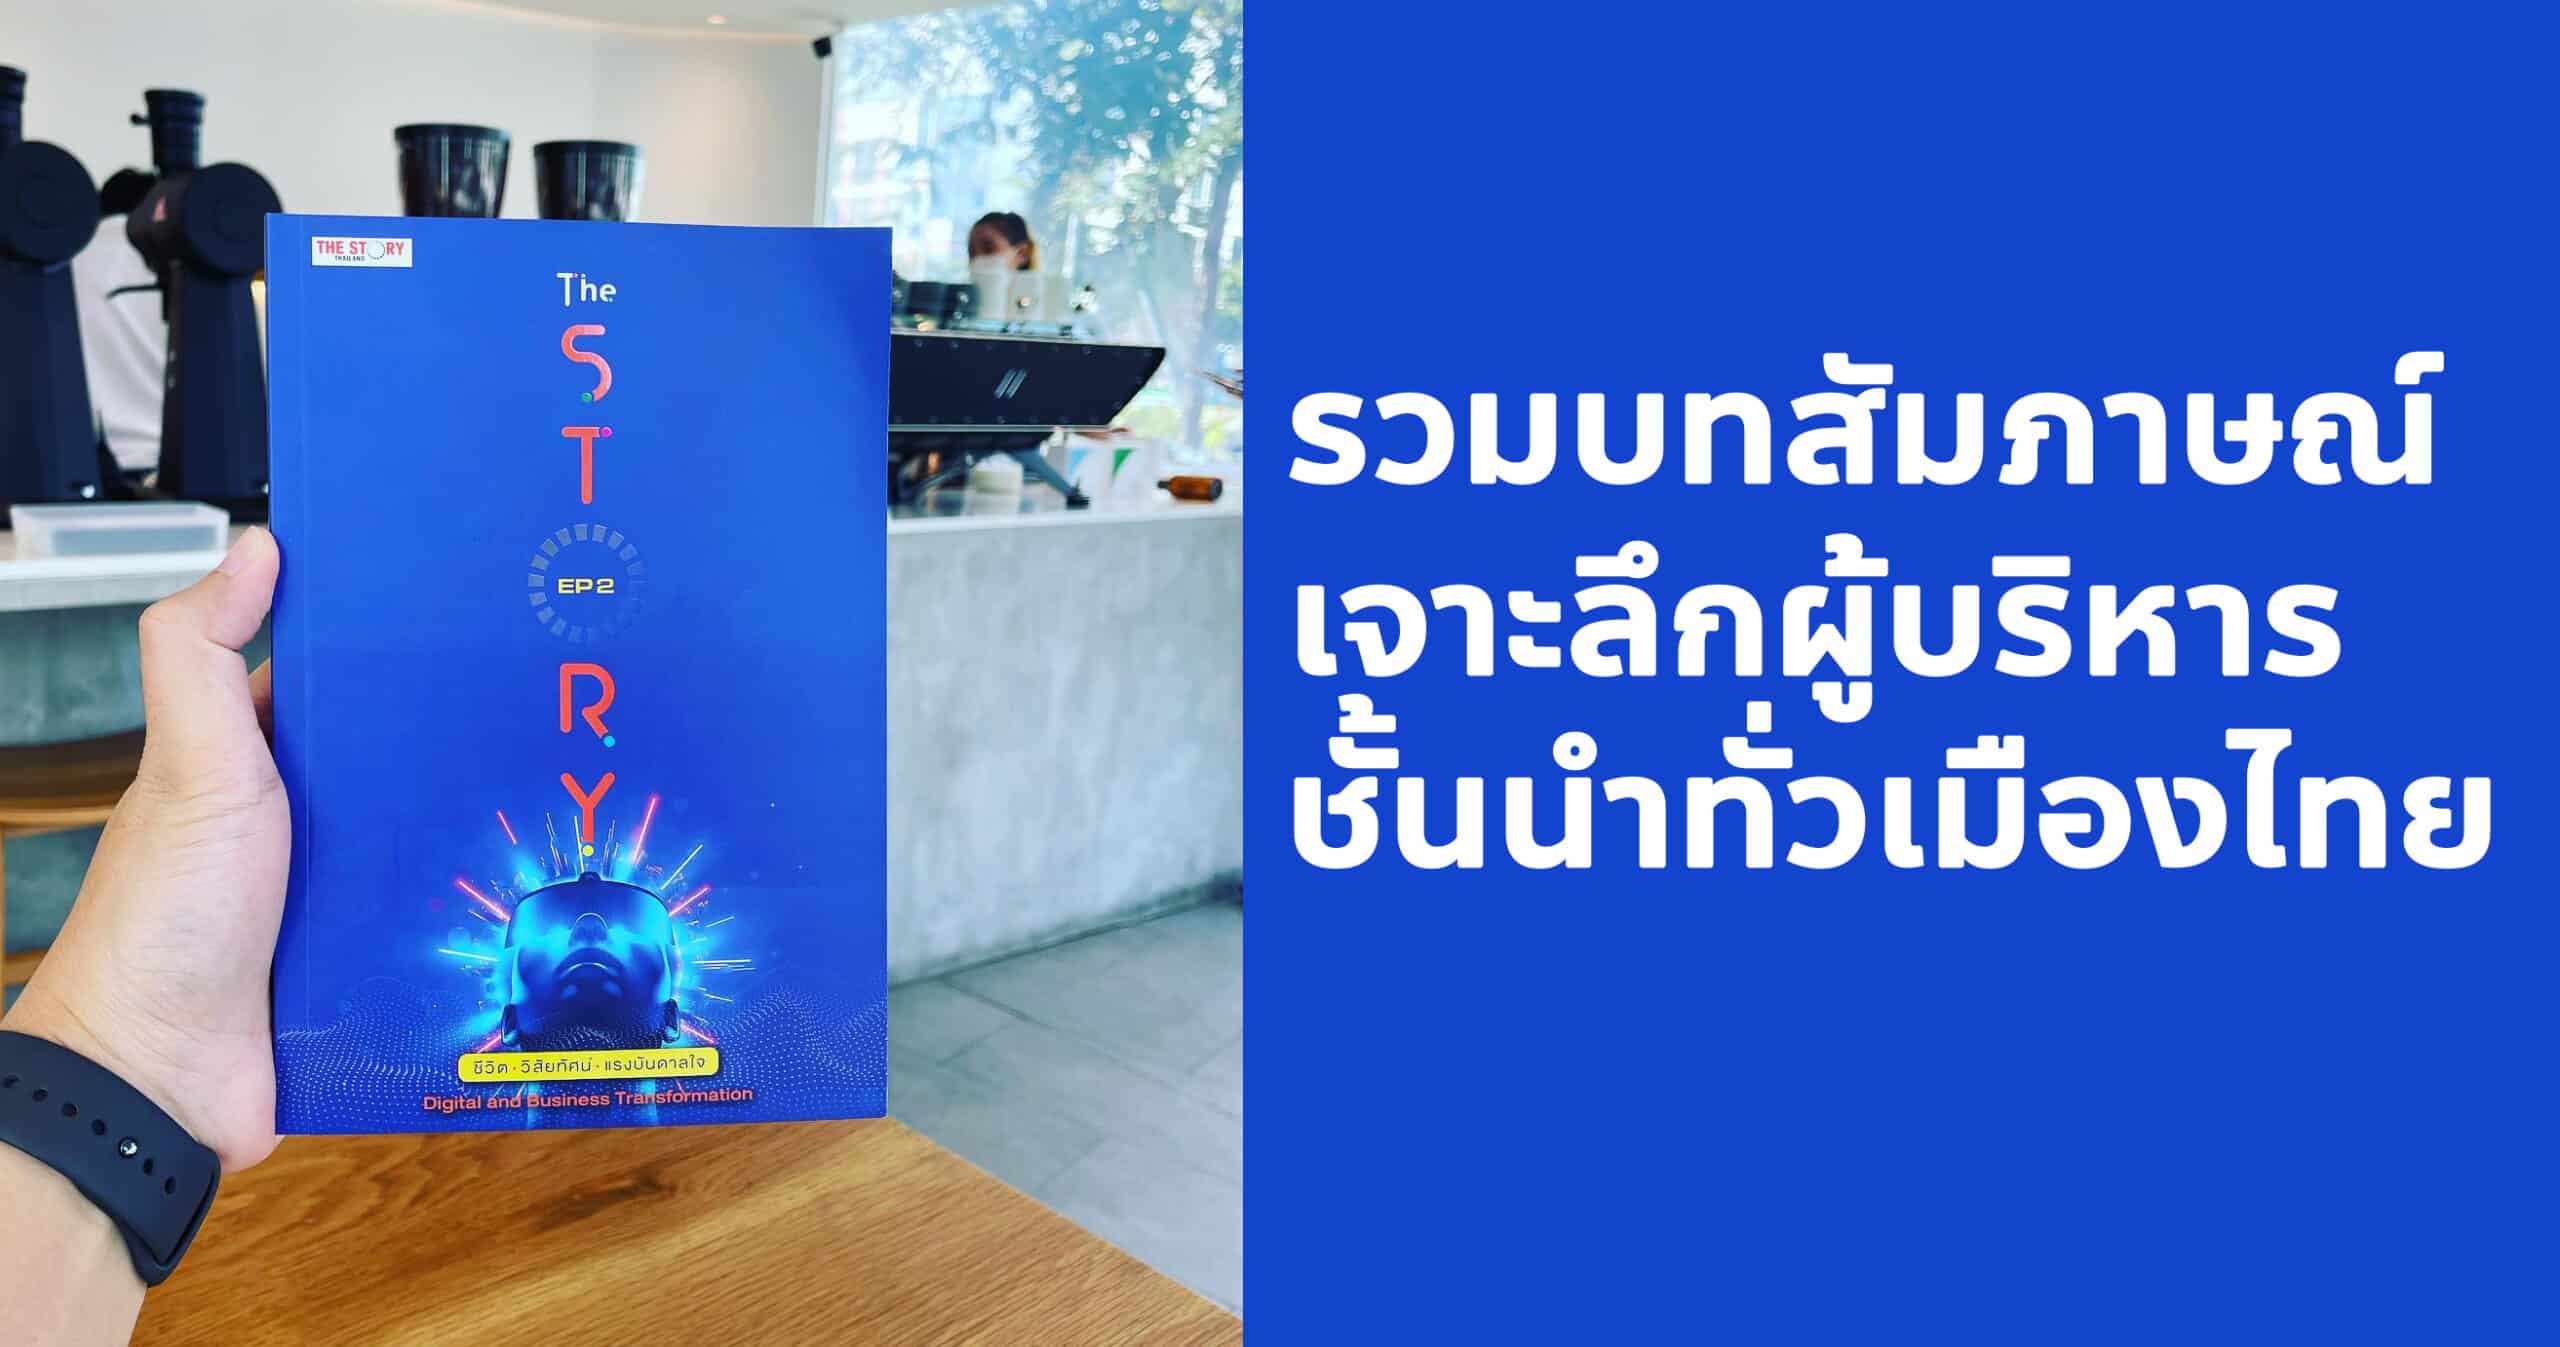 สรุปหนังสือ The Story Thailand เล่ม 2 รวมบทสัมภาษณ์เจาะลึกชั้นดีของเหล่าผู้บริหารชั้นนำทั่วประเทศ ถอดรหัสความคิด ความสำเร็จ และแรงบันดาลใจ